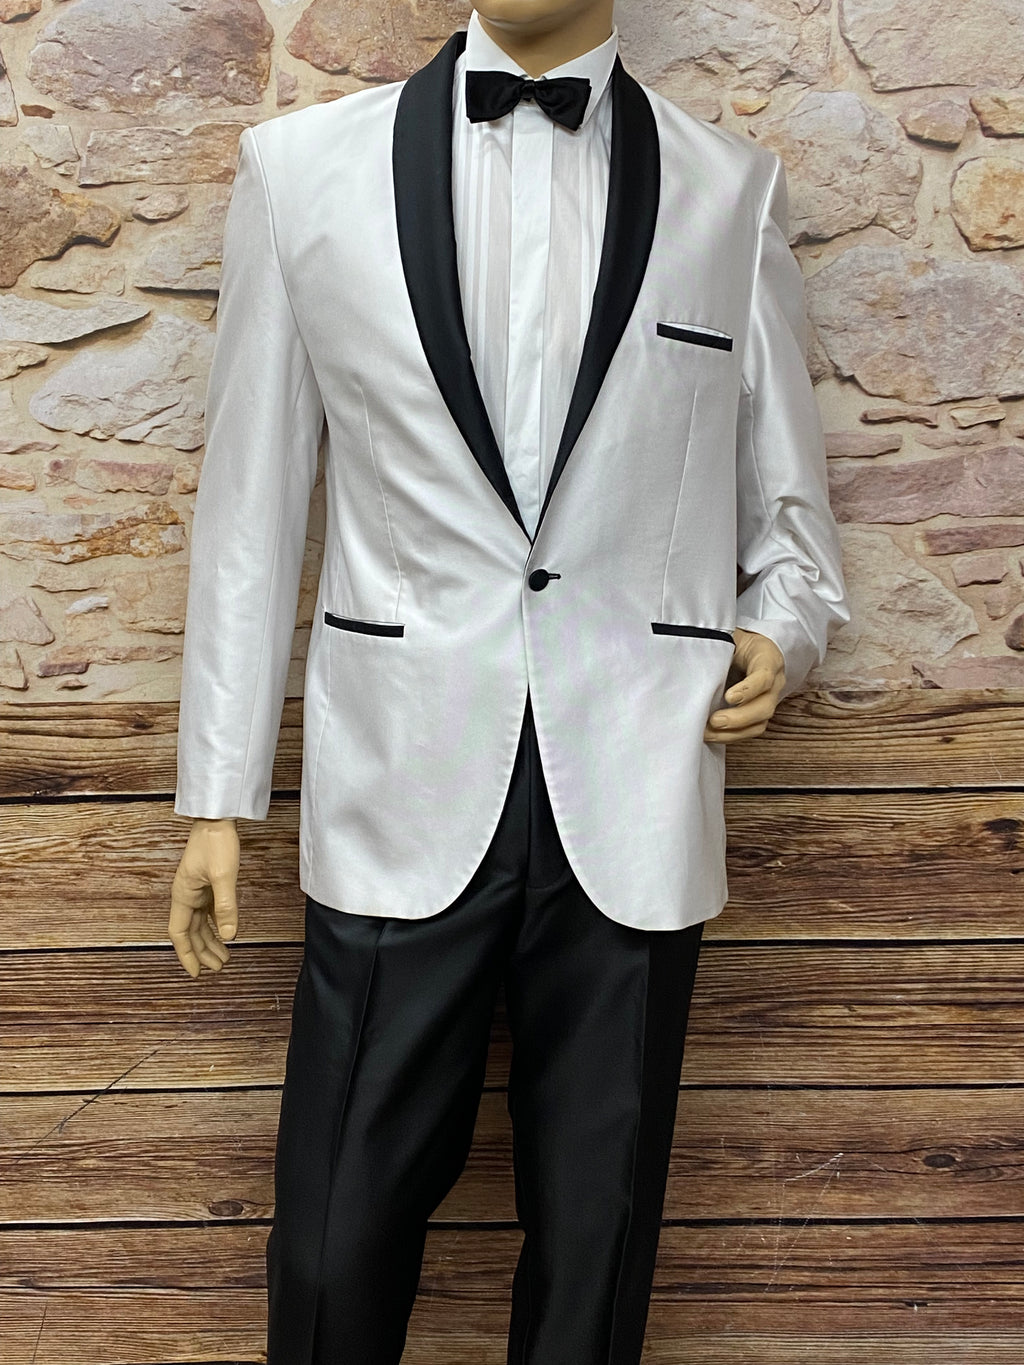 Schwarz weißer Anzug 5teilig, Gr.50, Mottoparty Black and White